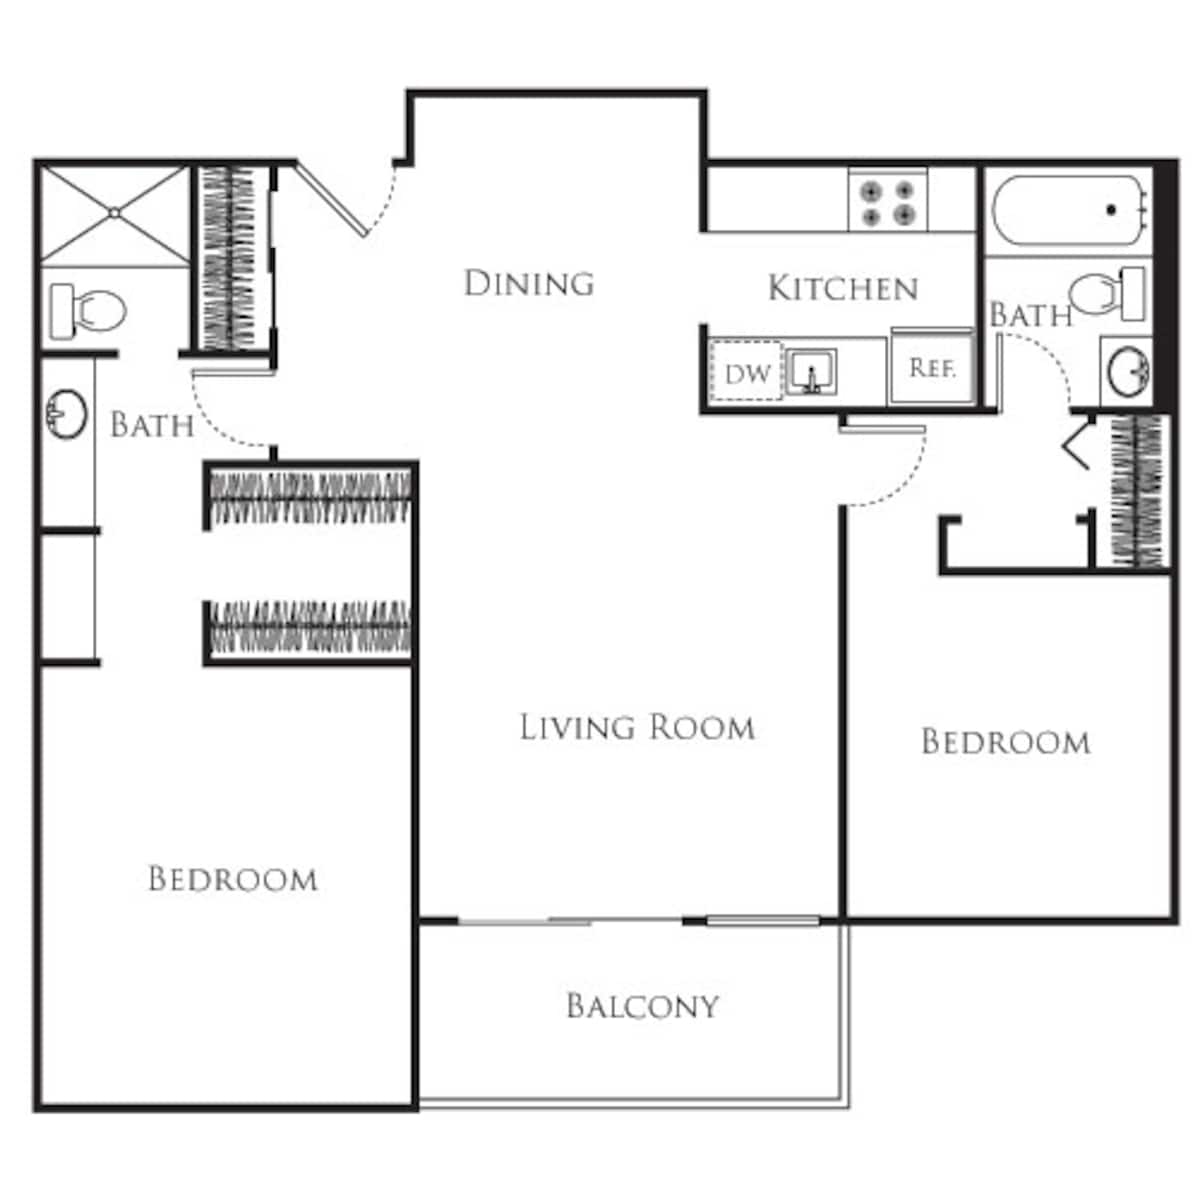 Floorplan diagram for 2 Bedroom C, showing 2 bedroom